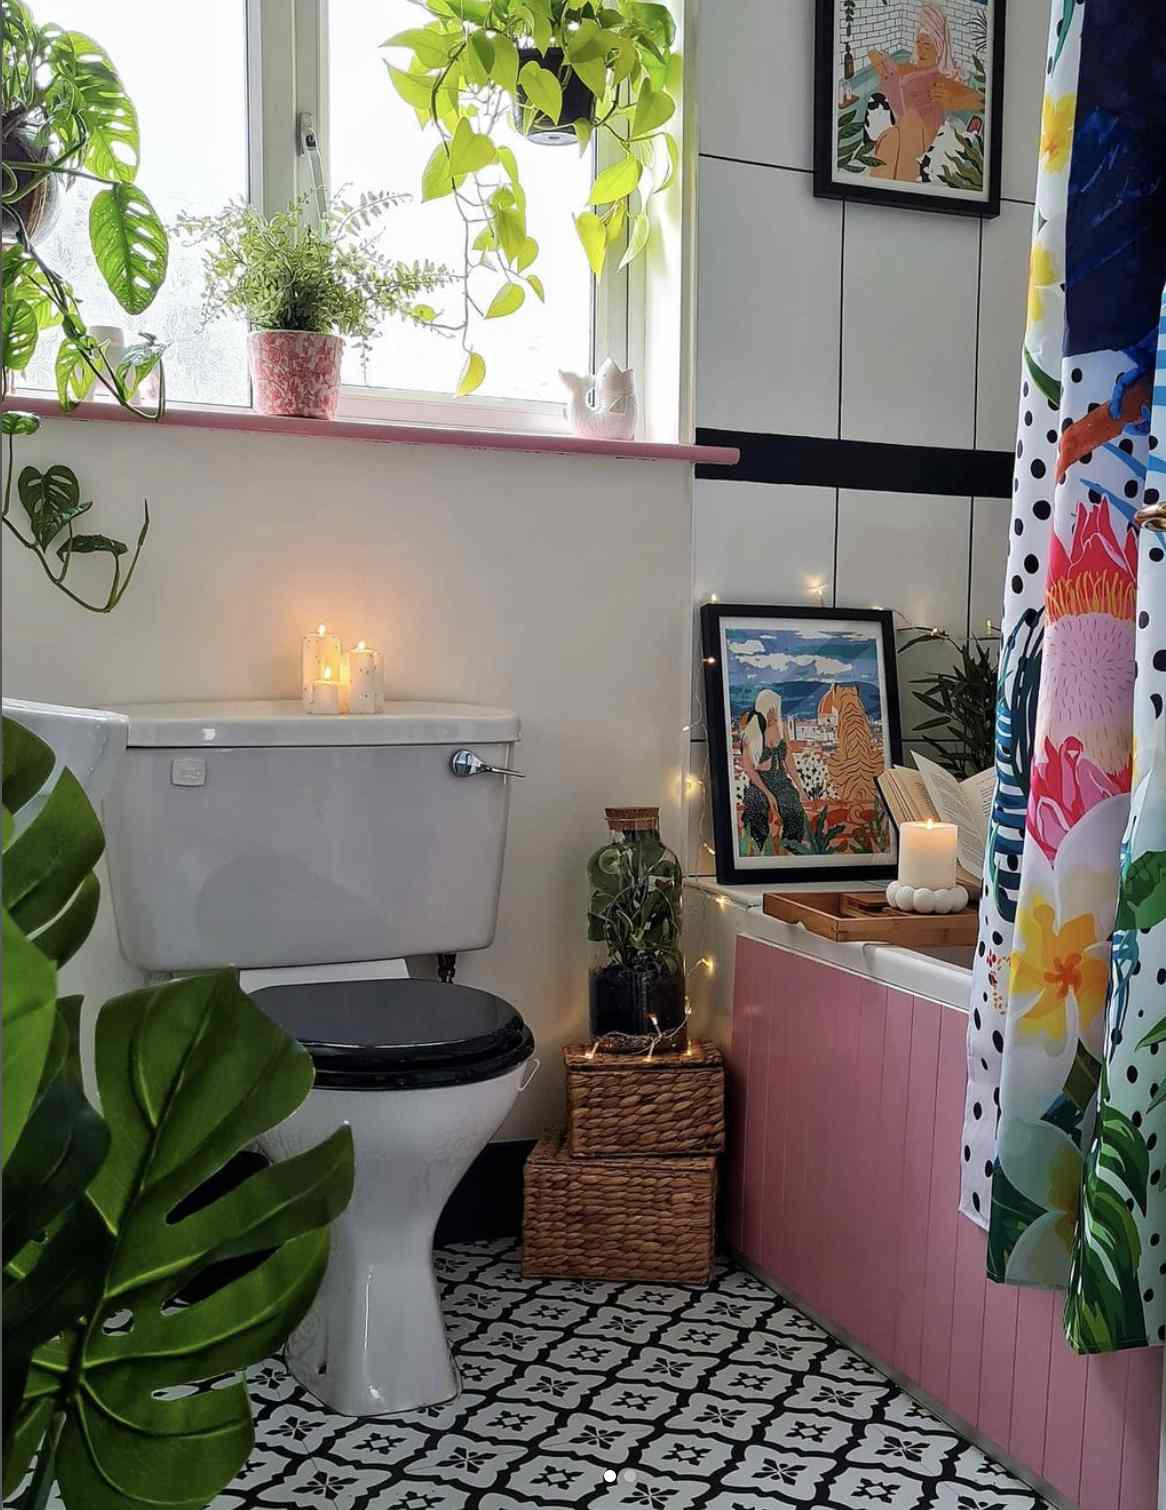 baño colorido con plantas y cestas apiladas para decorar